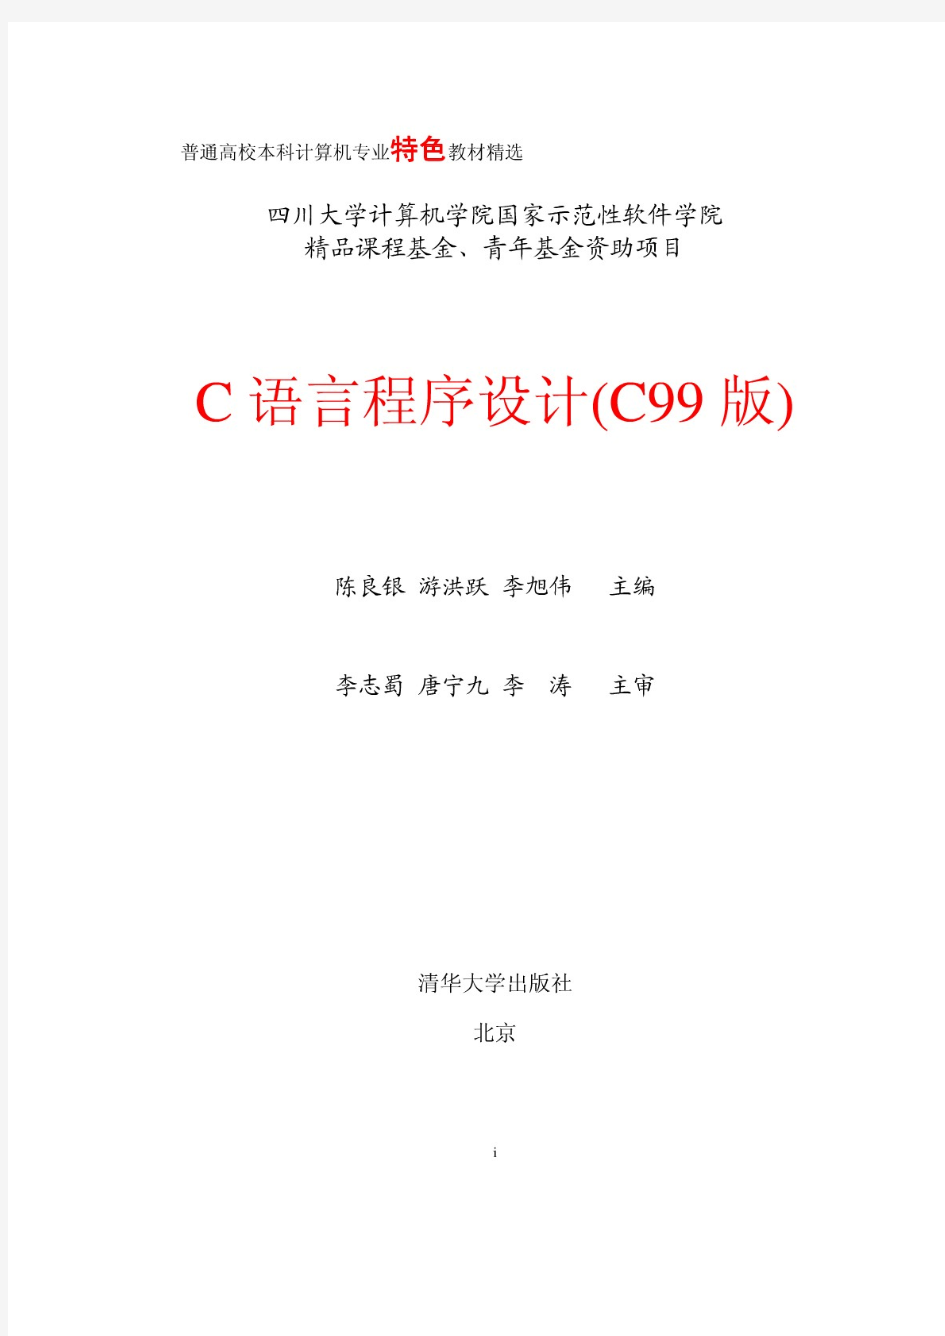 c语言程序设计C版(pdf 页)